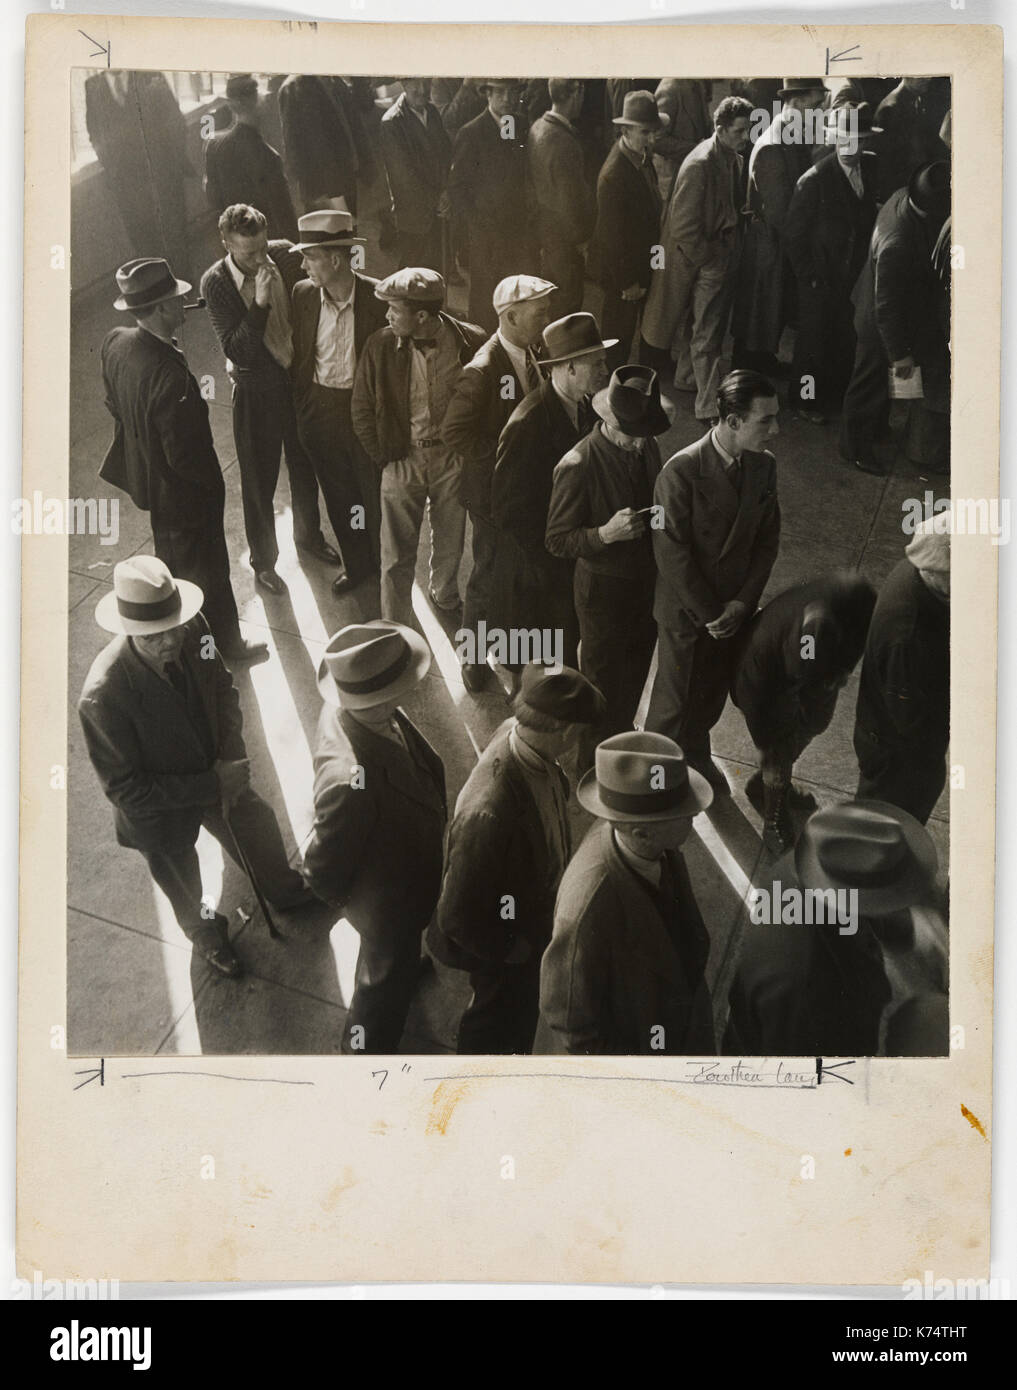 Gli uomini disoccupati line up per la prima volta in California al file richieste di sussidi di disoccupazione, CA, 1936. Foto di Dorothea Lange Foto Stock